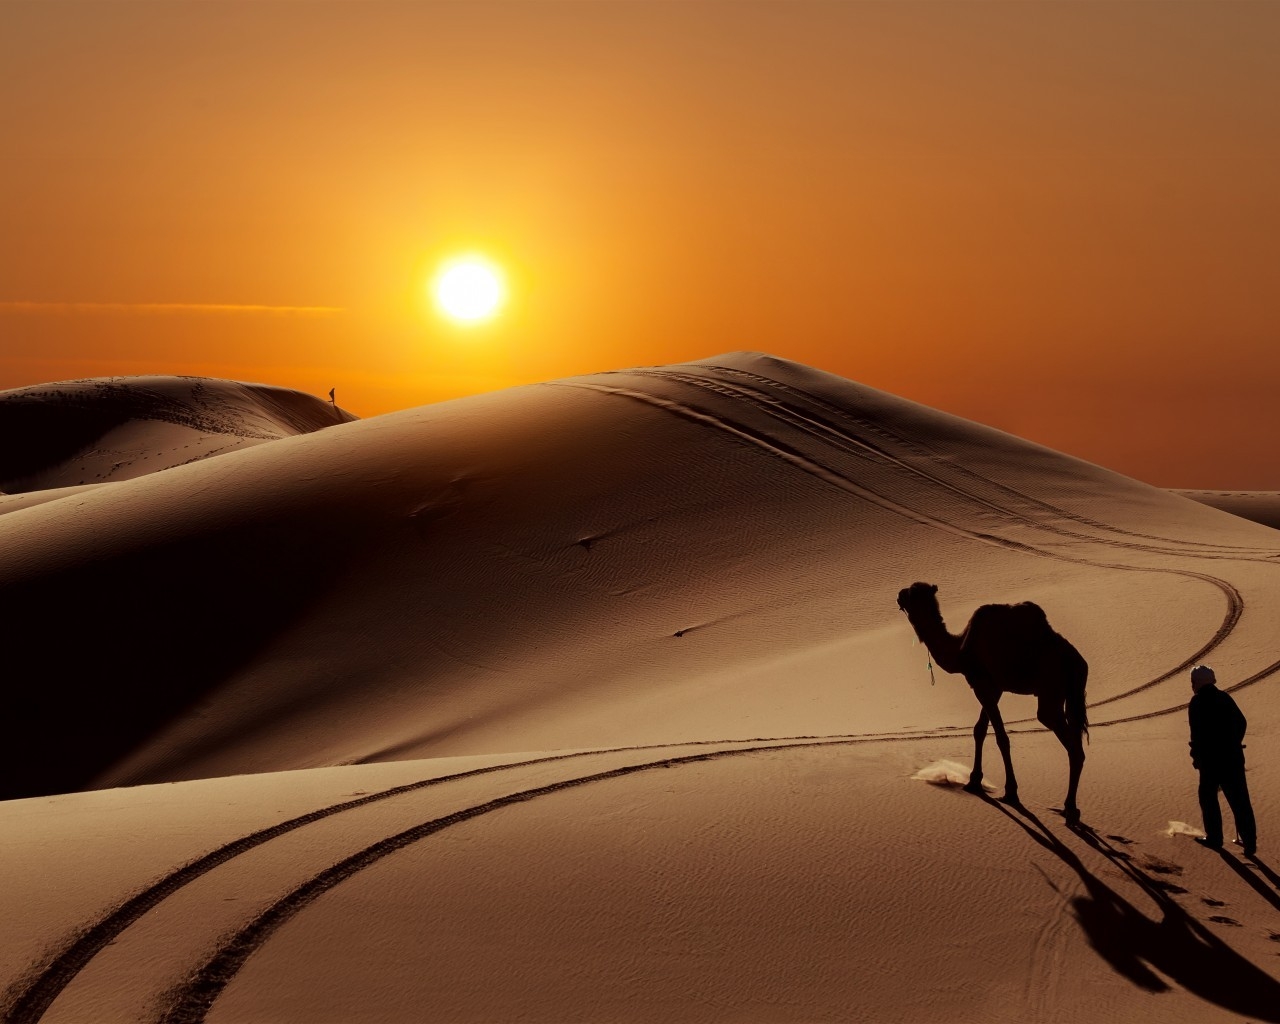 Sunset in Desert for 1280 x 1024 resolution